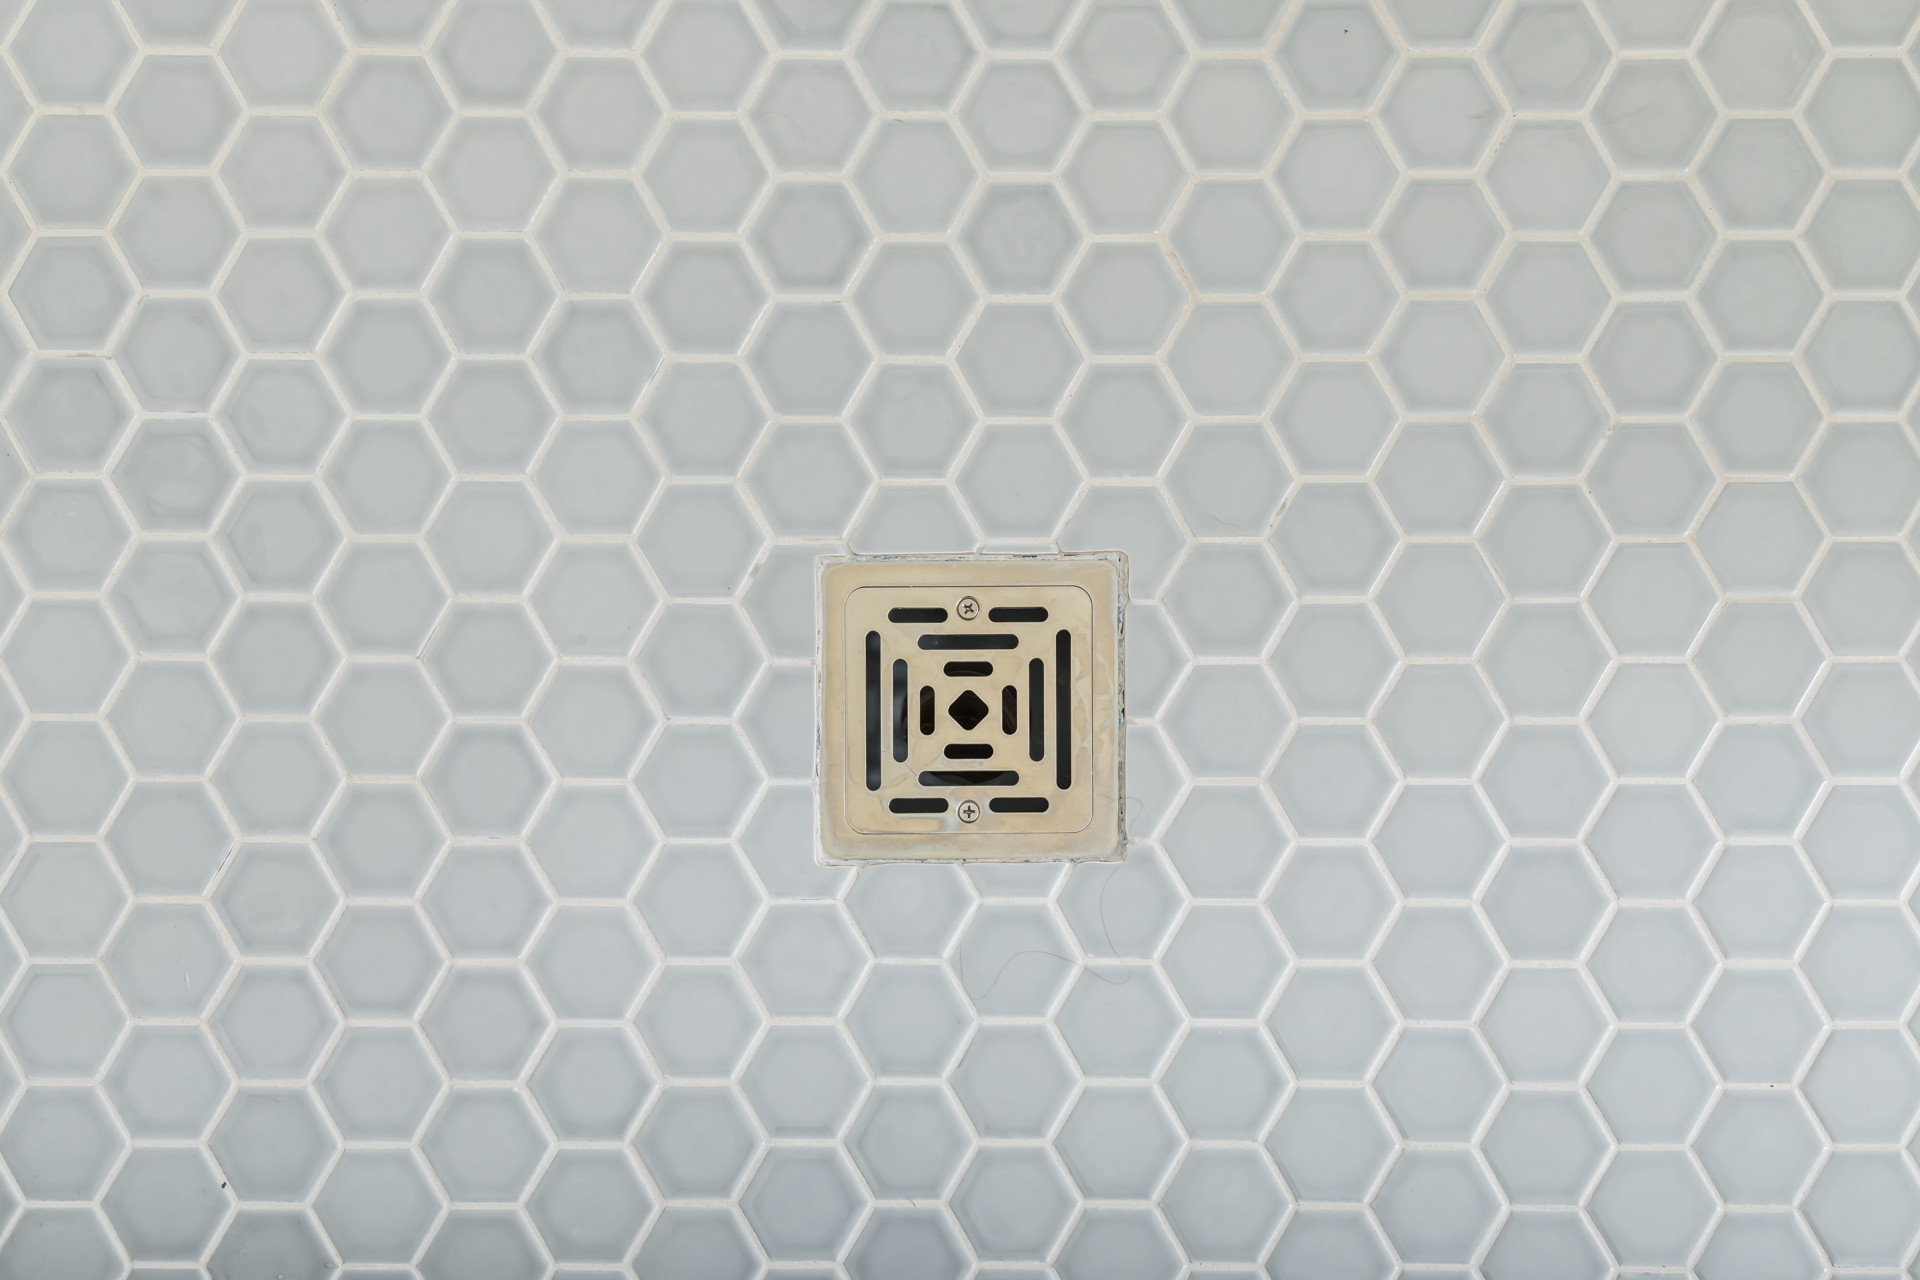 hexagonal floor tile shower drain